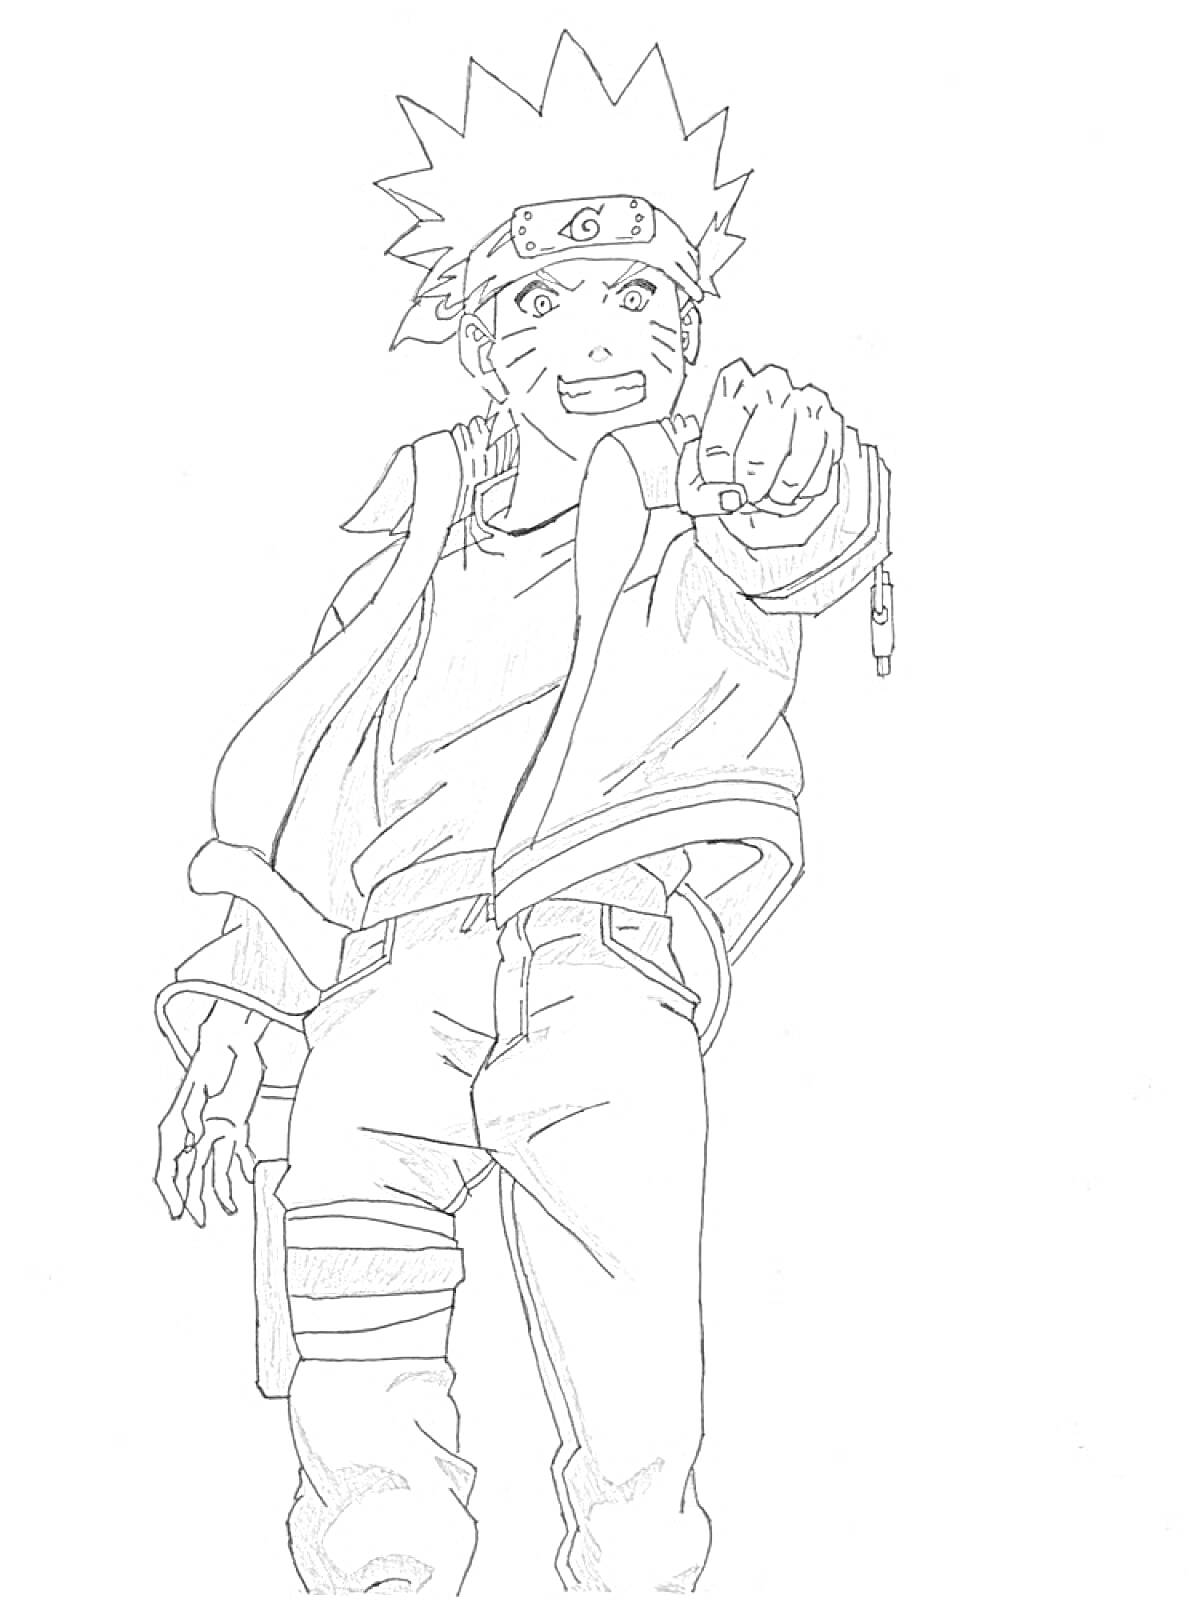 Раскраска Наруто в полный рост с поднятой рукой и кулаком, защитная повязка на лбу, карманная сумка на бедре